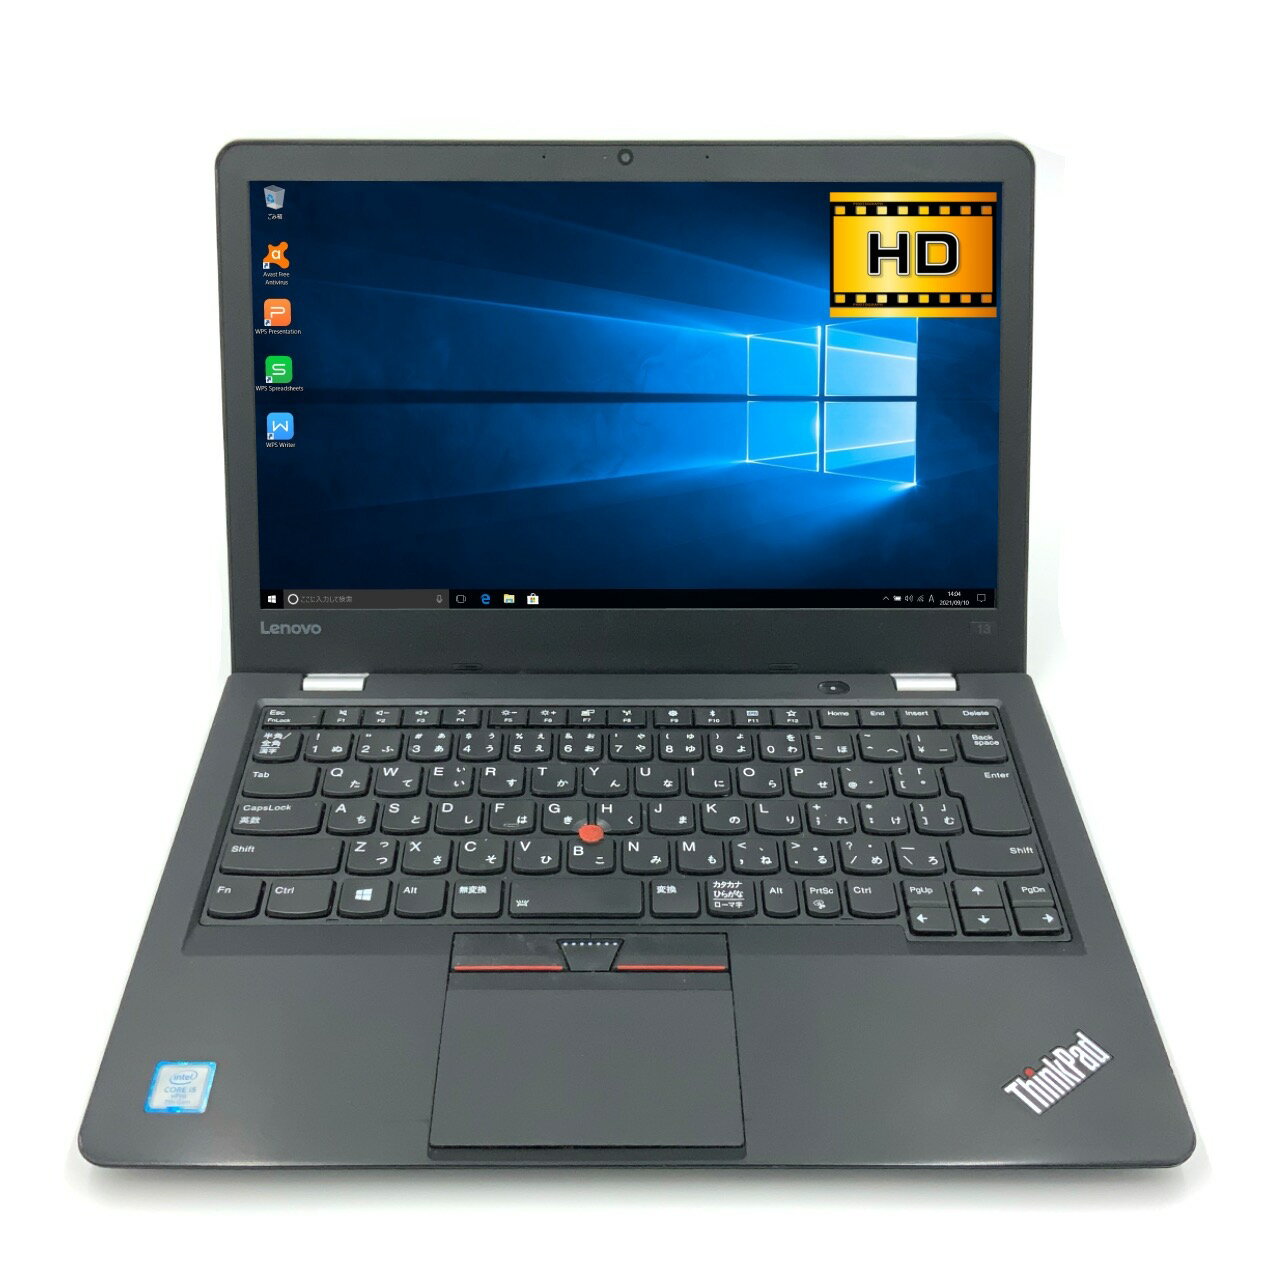 【定番】【モバイル】 Lenovo ThinkPad 13 第7世代 Core i5 7300U/2.60GHz 64GB 新品SSD2TB M.2 Windows10 64bit WPSOffice 13.3インチ HD カメラ 無線LAN 中古パソコン ノートパソコン モバイルノート PC Notebook 【中古】